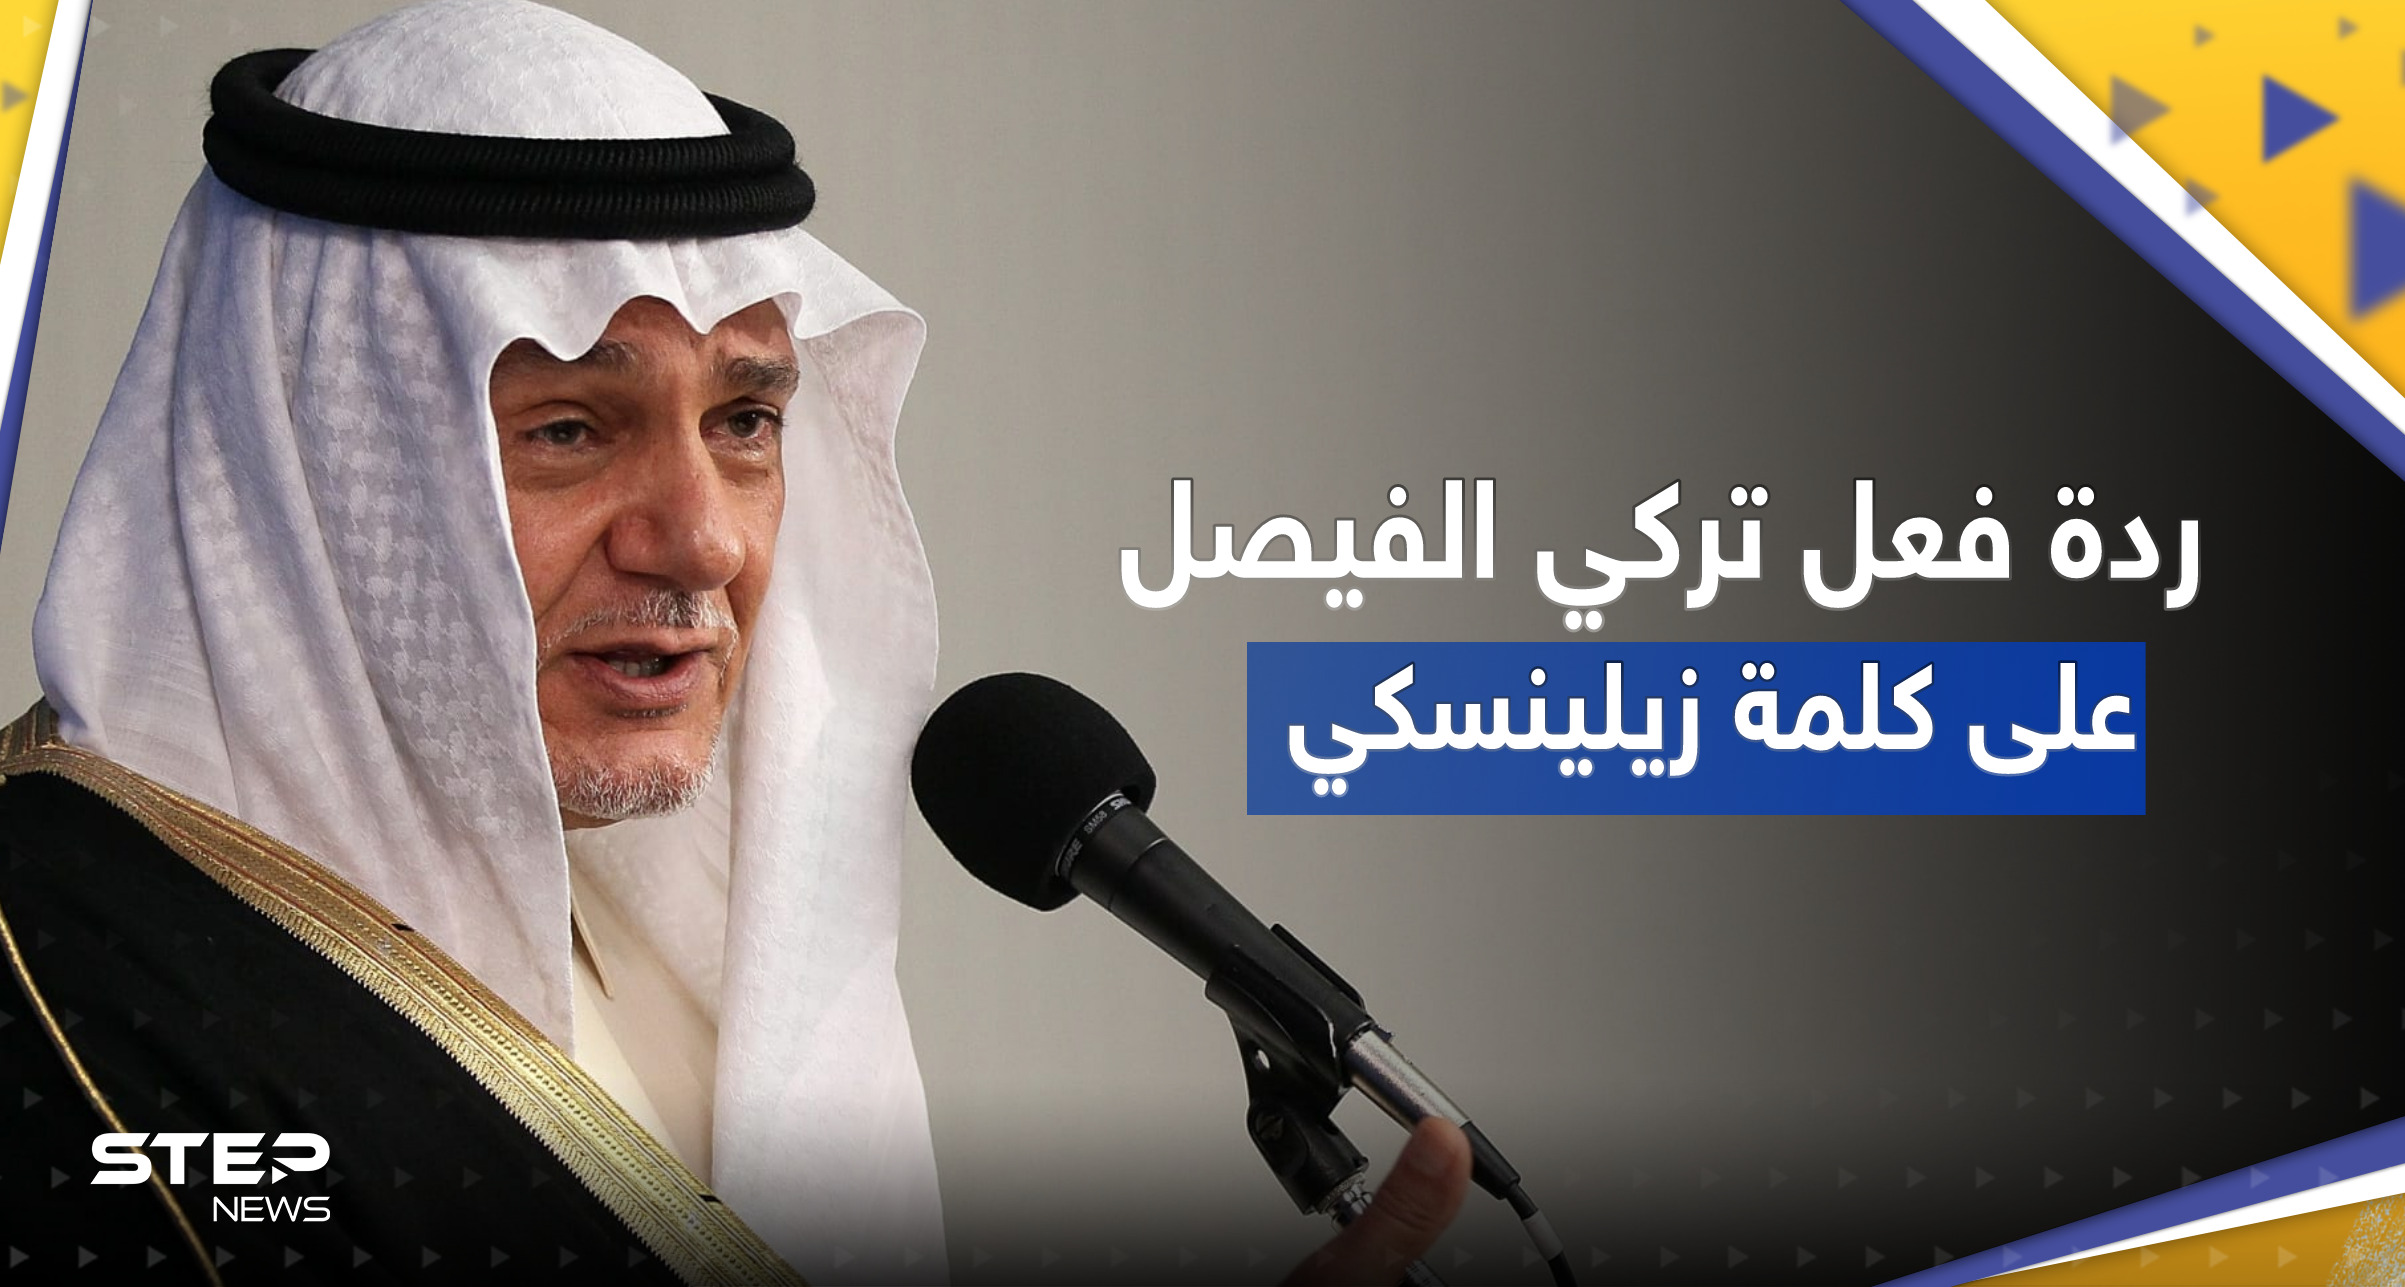 بالفيديو || تفاعل على ردة فعل رئيس الاستخبارات السعودية الأسبق عقب كلمة زيلينسكي بمؤتمر ميونخ